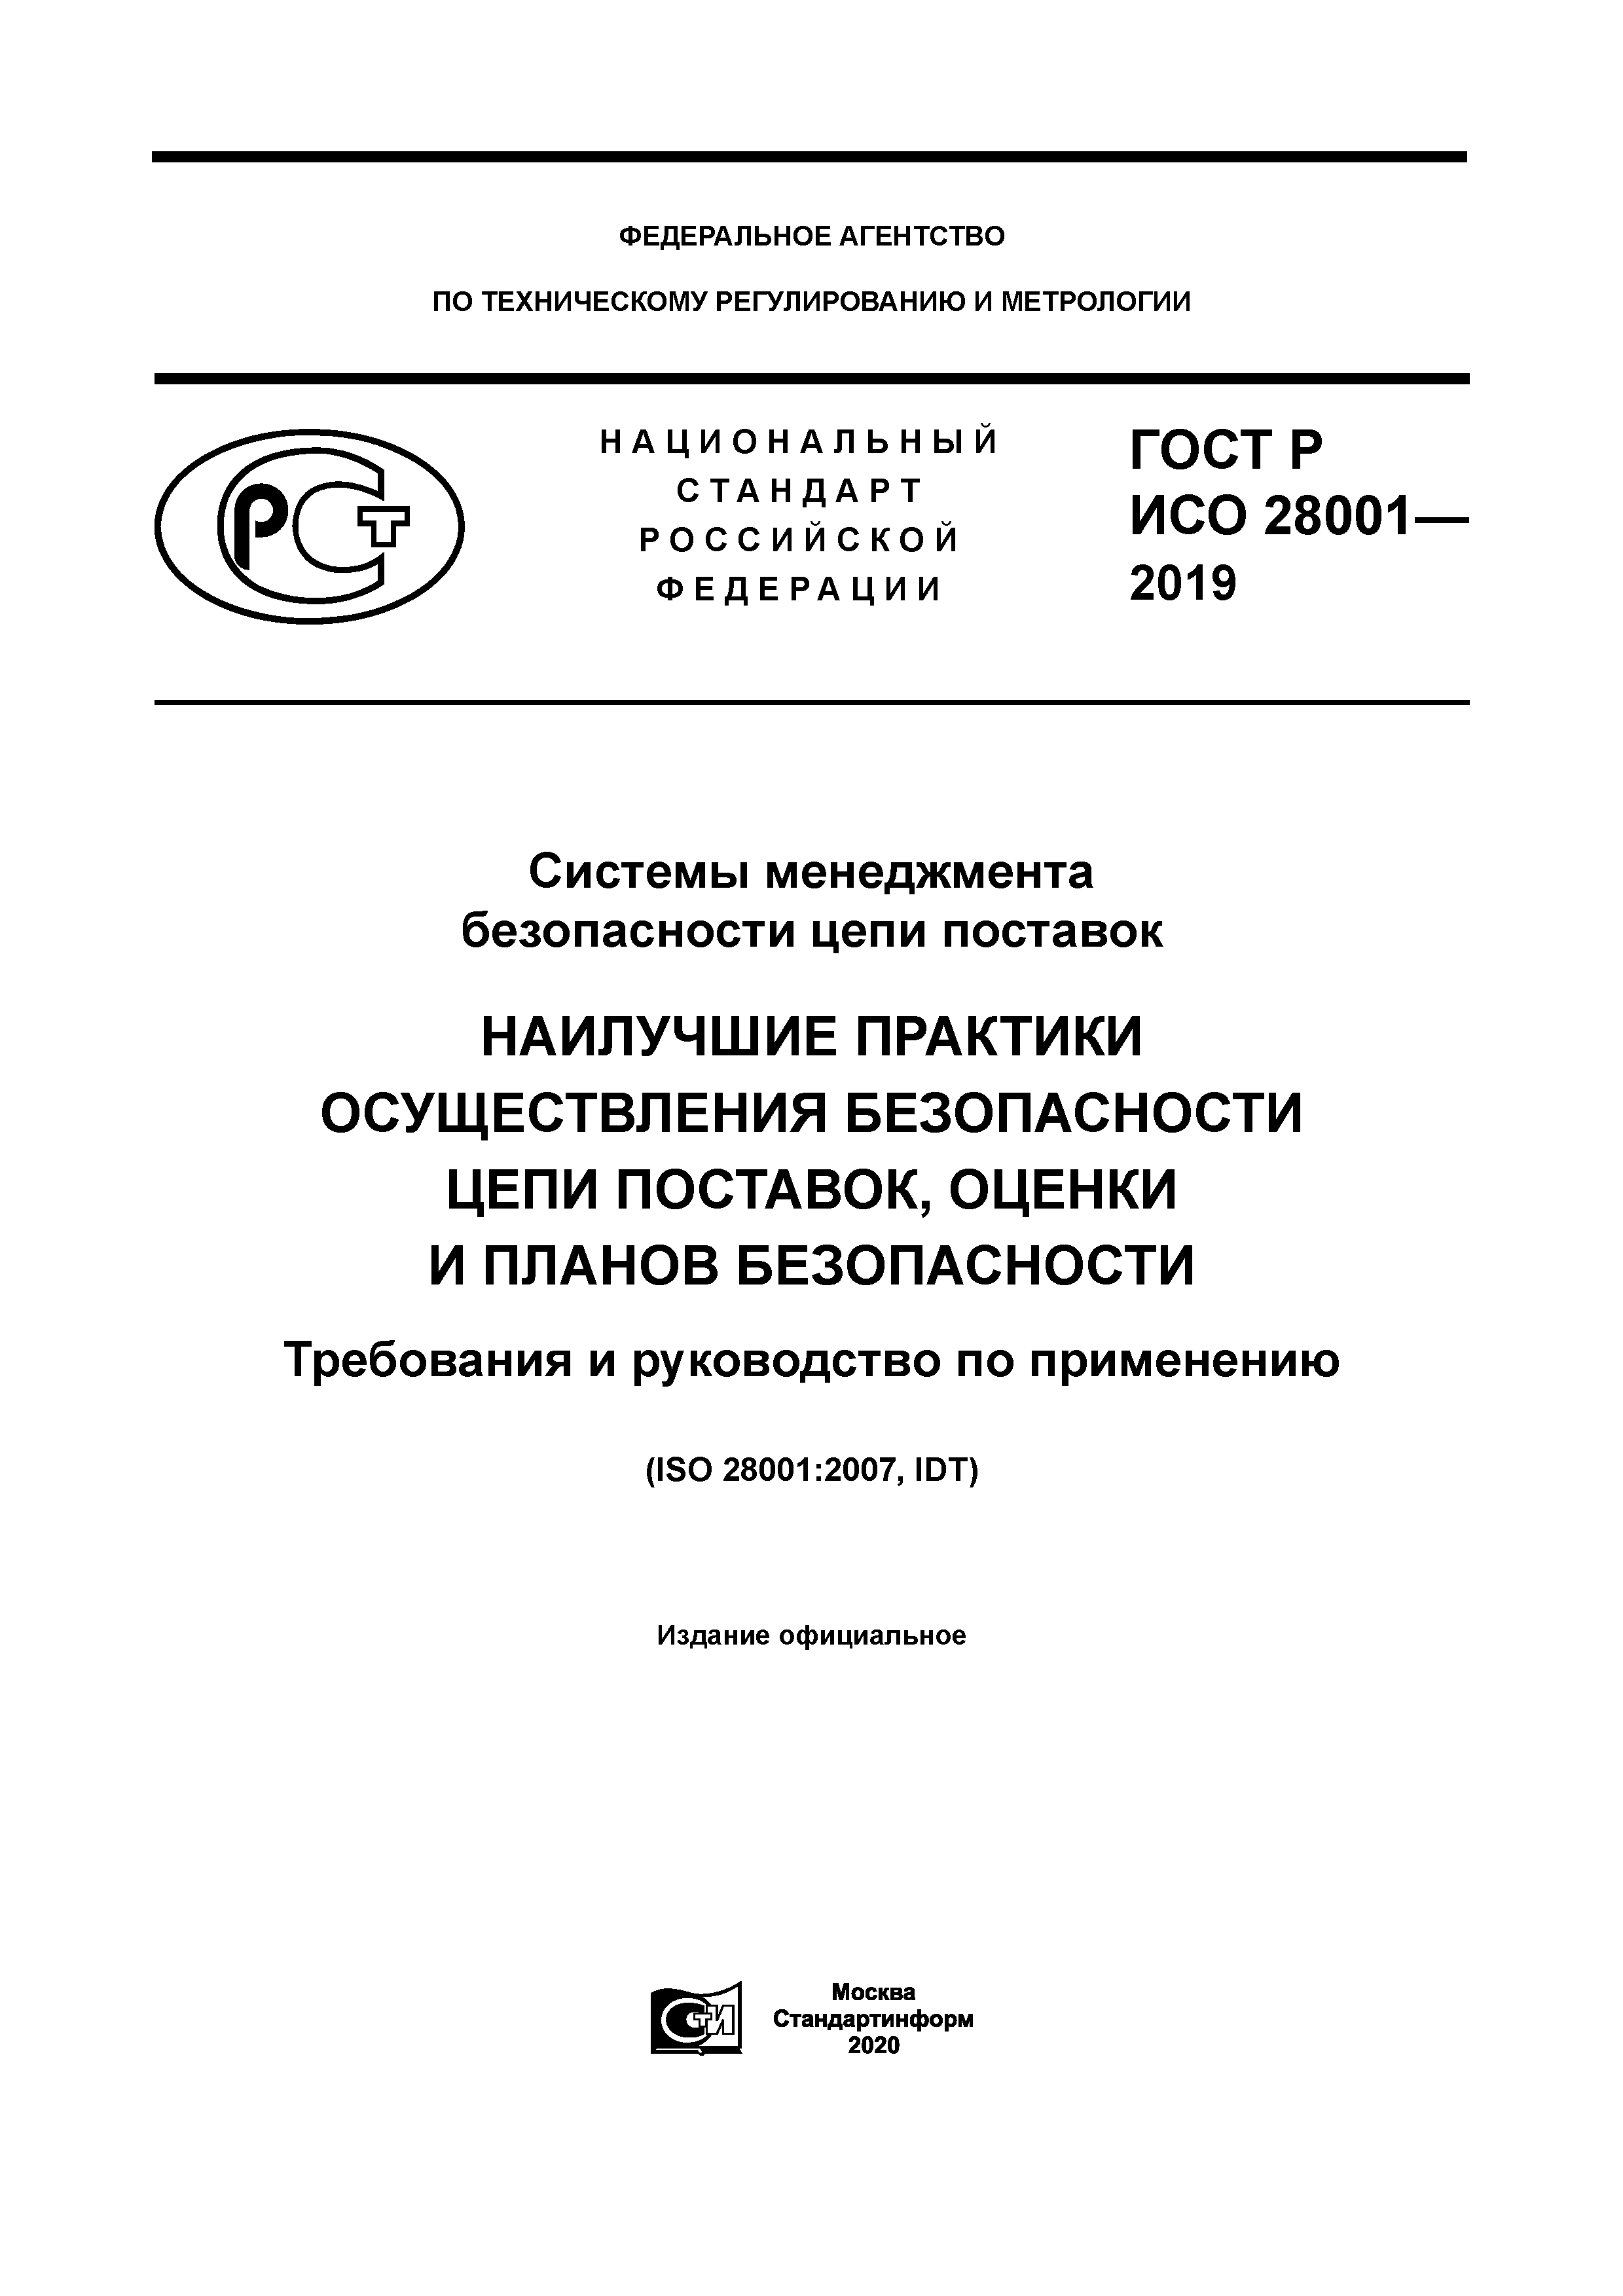 ГОСТ Р ИСО 28001-2019